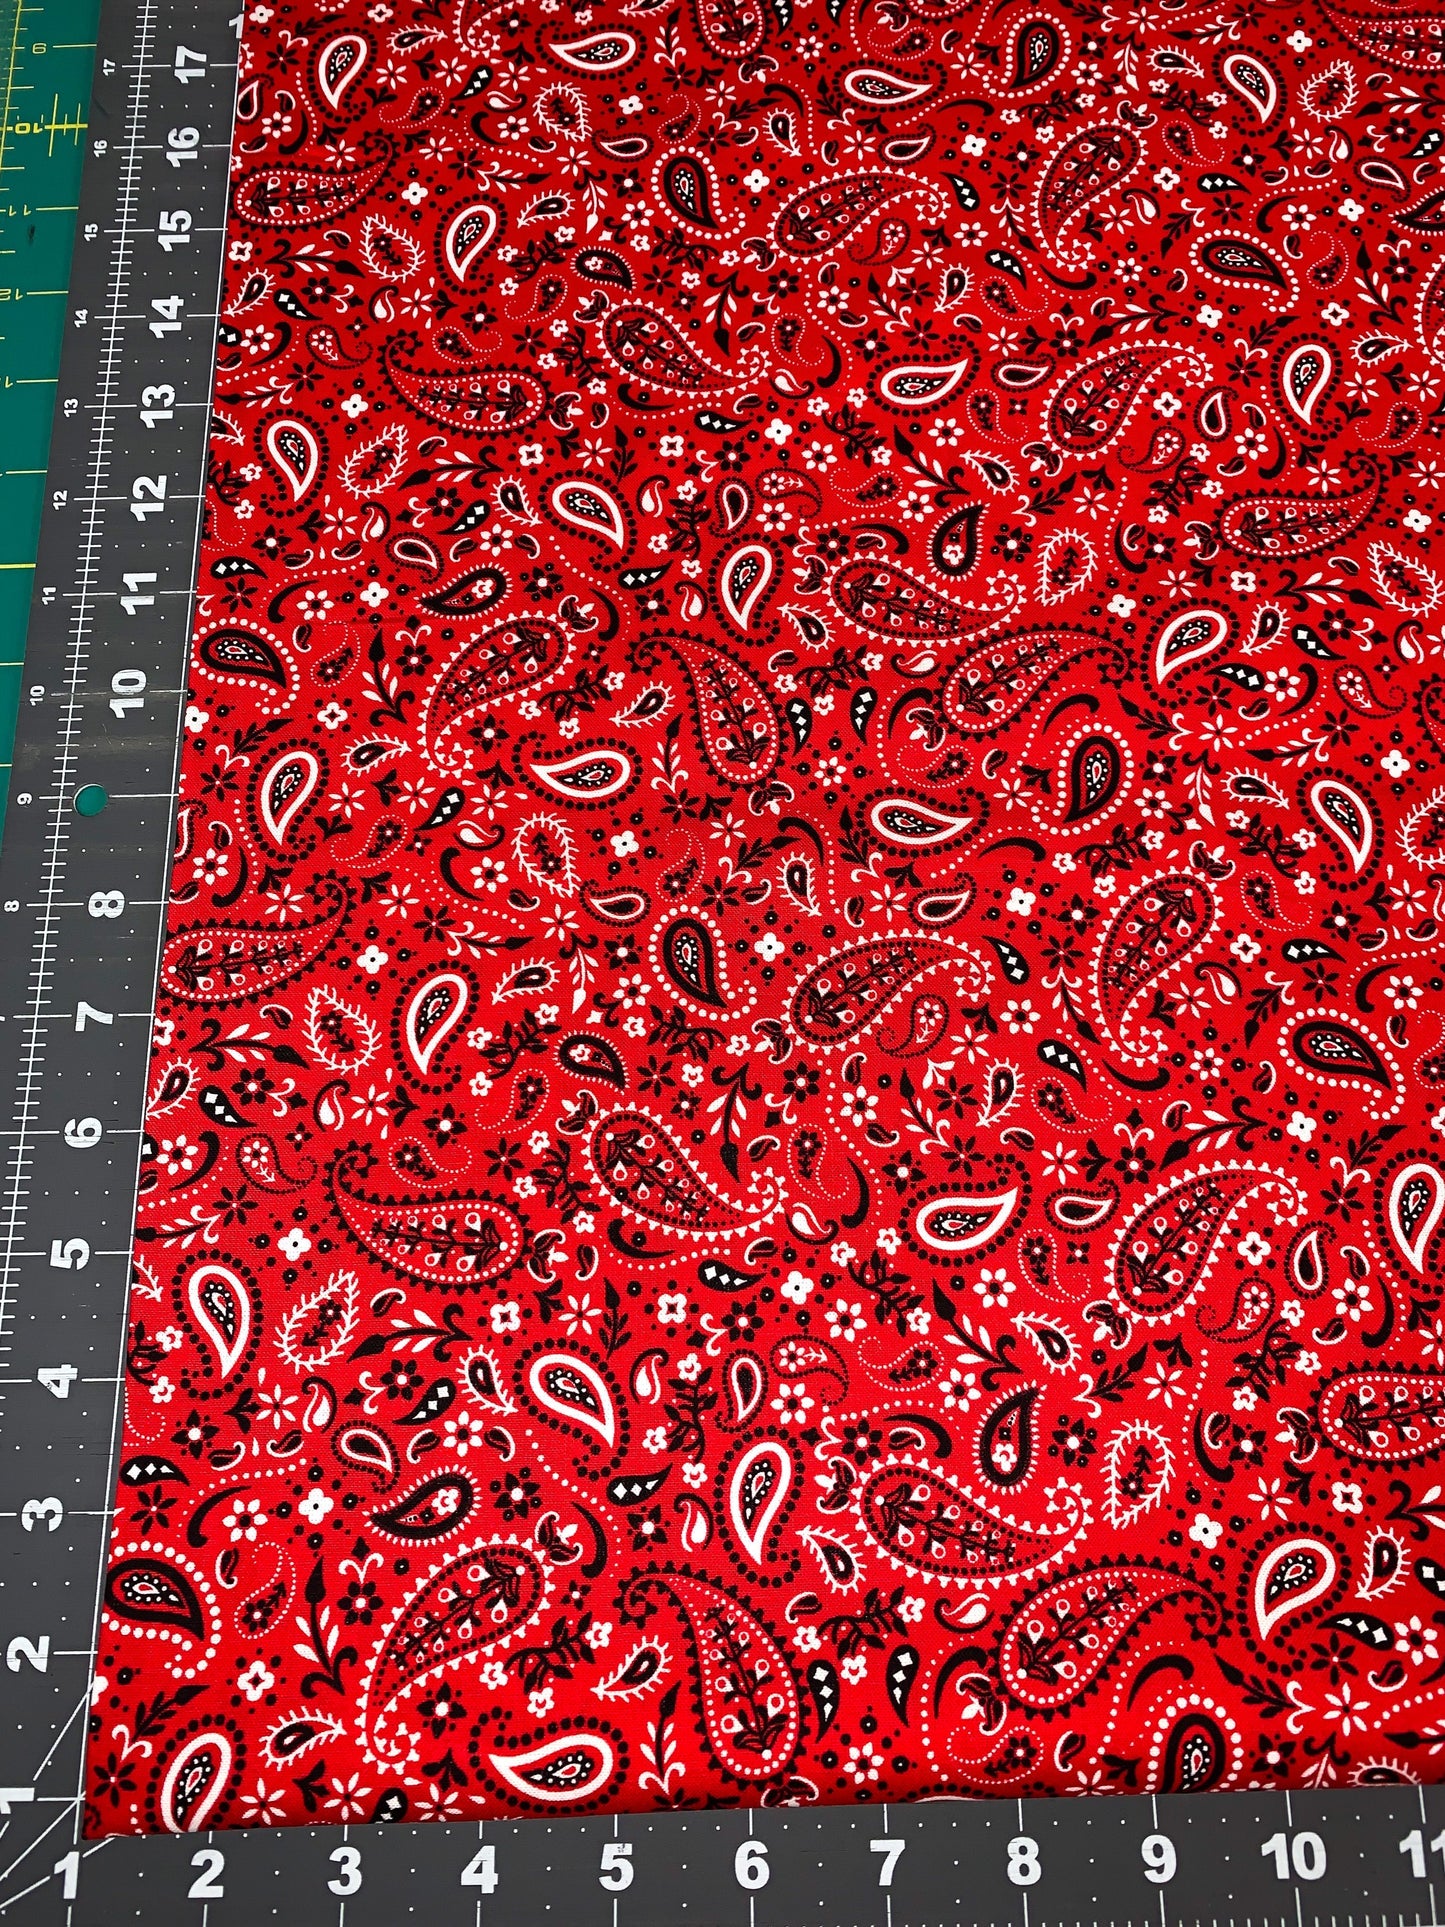 Red bandana fabric C1213 dog bandana cotton fabric